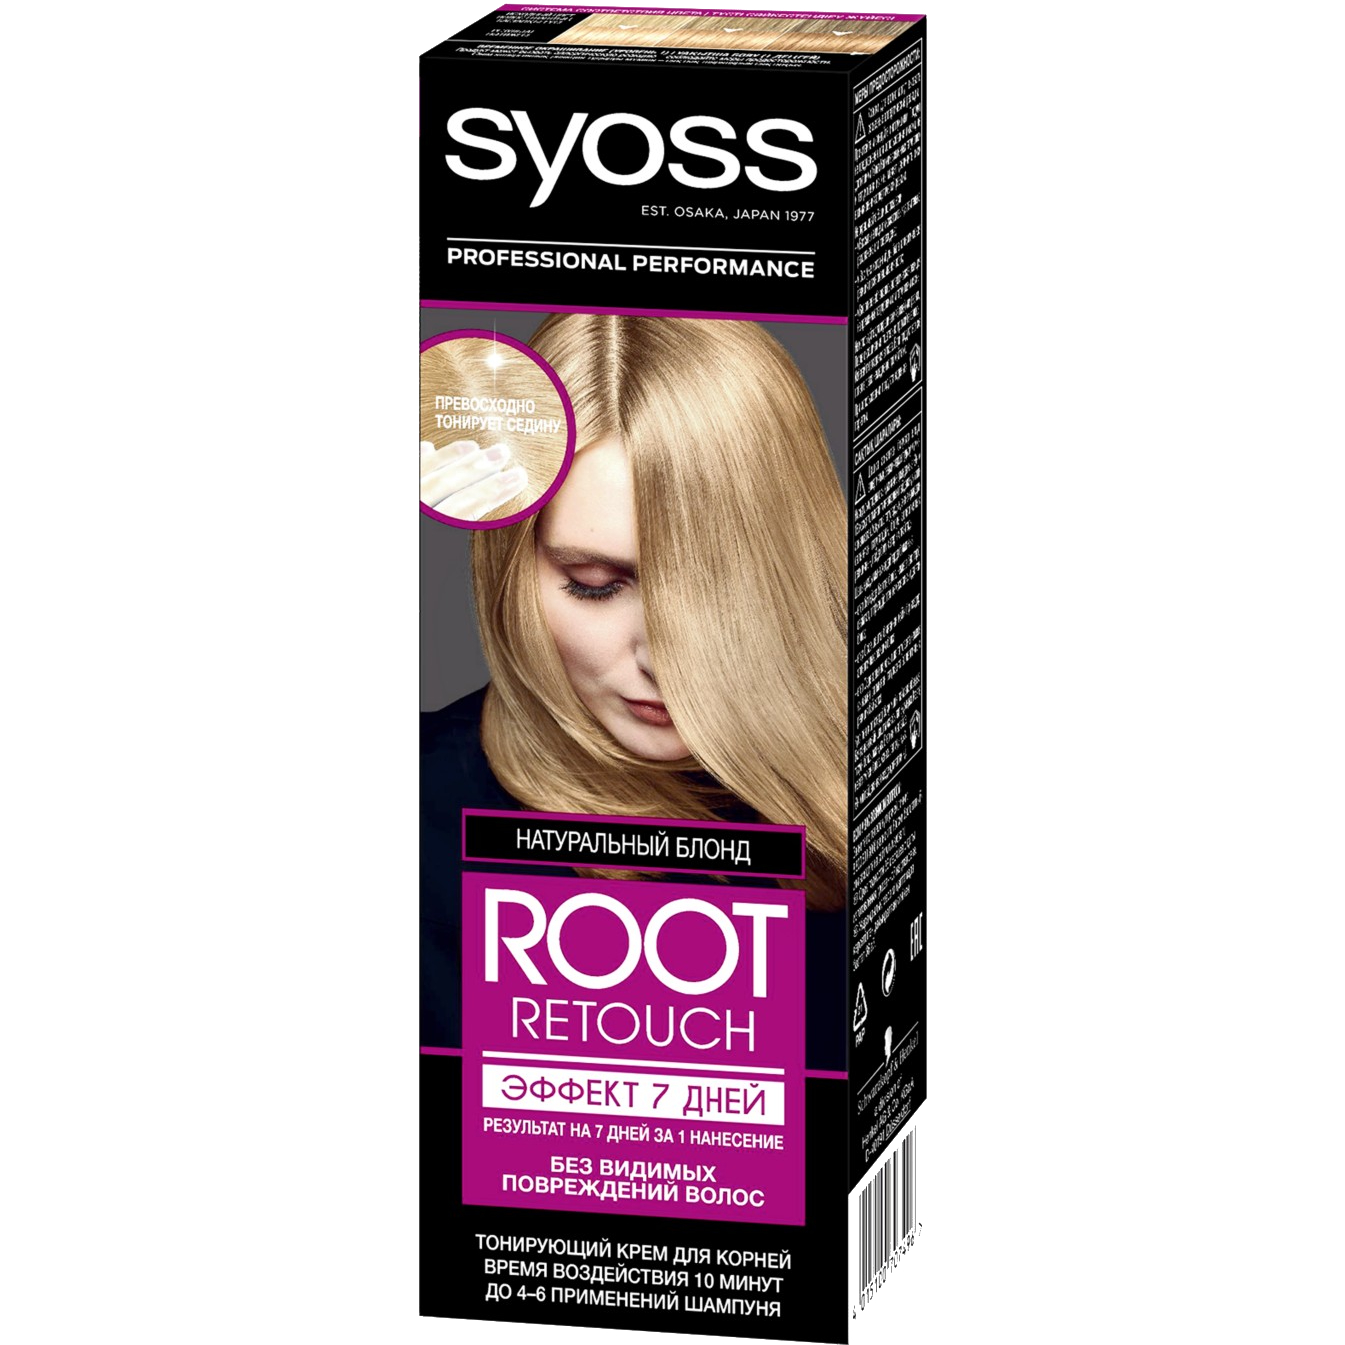 Крем для волос Syoss Root Retoucher тонирующий Эффект 7 дней оттенок 8.0 Натуральный Блонд, 60 мл крем для волос syoss root retoucher тонирующий эффект 7 дней оттенок 5 0 тёмно каштановый 60 мл